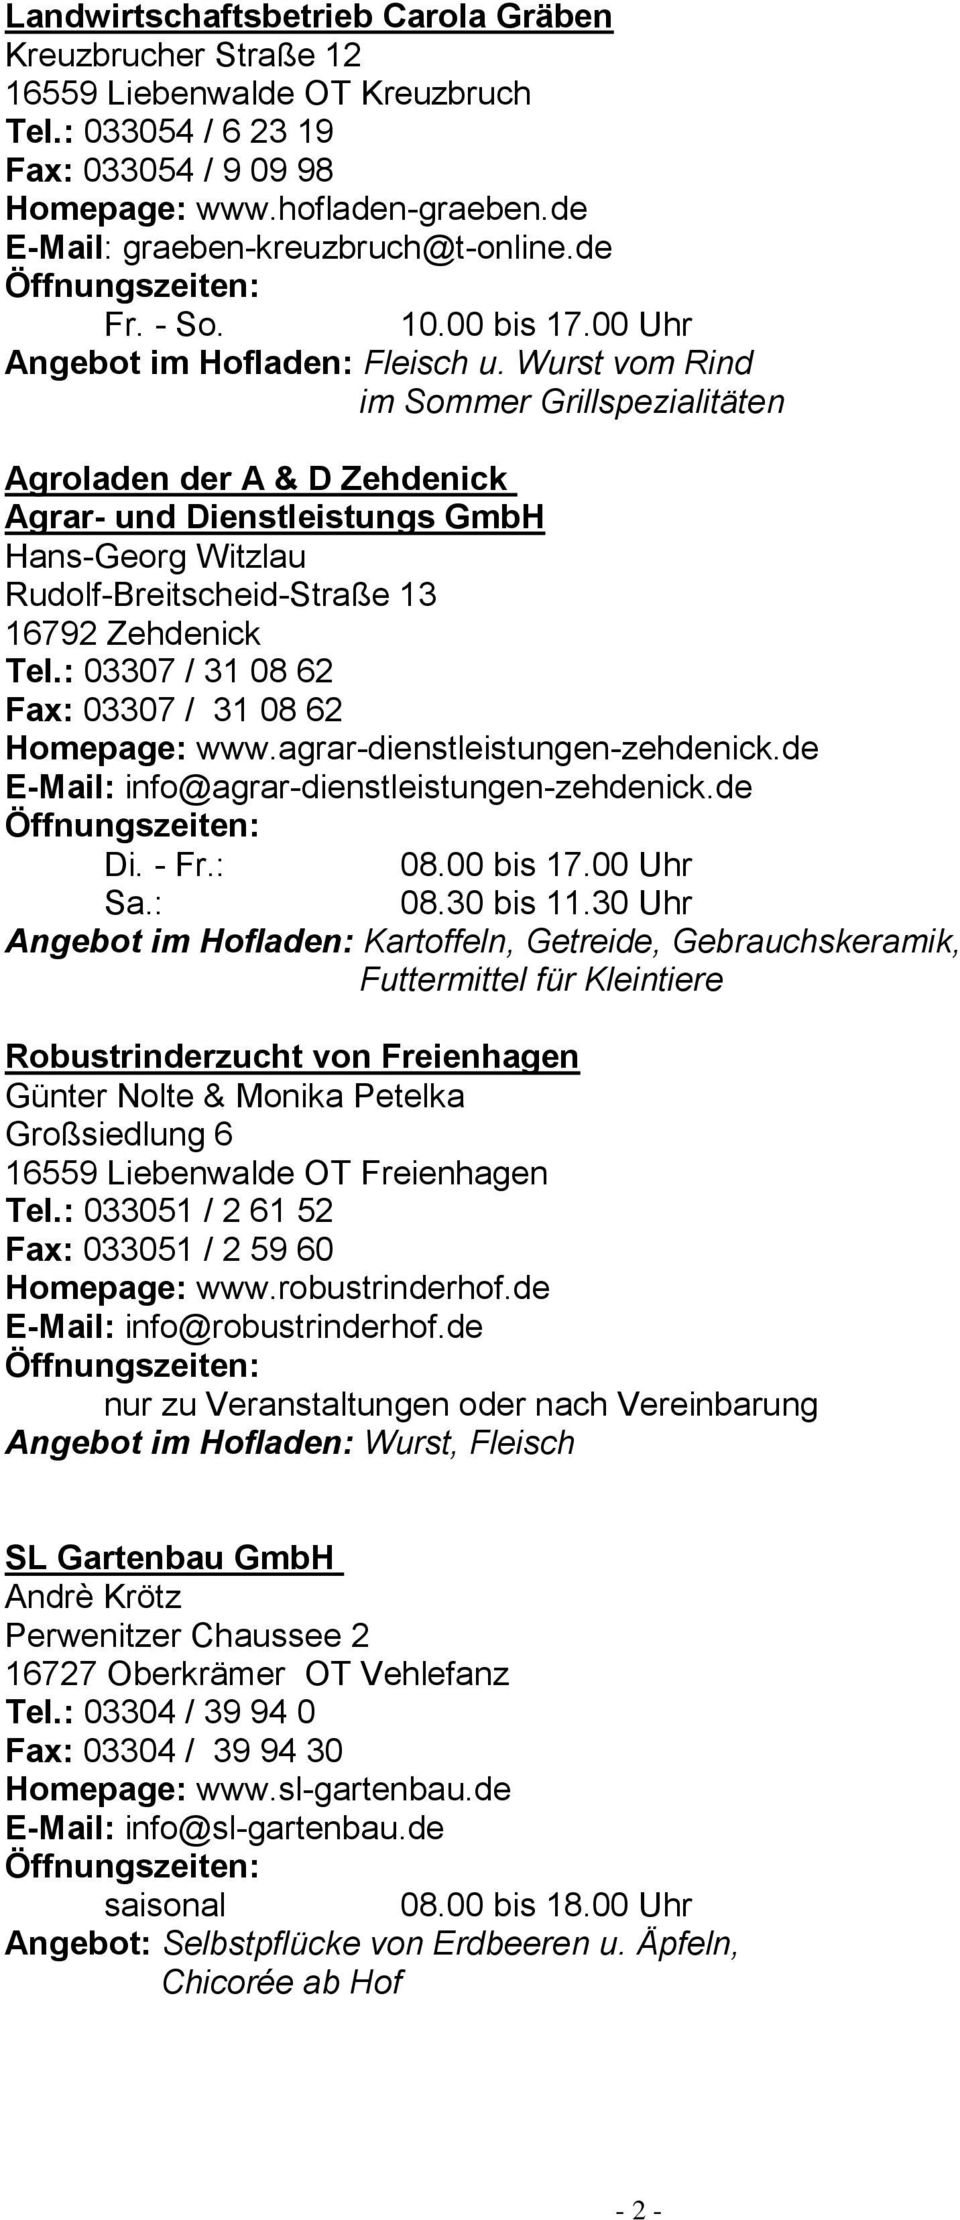 Wurst vom Rind im Sommer Grillspezialitäten Agroladen der A & D Zehdenick Agrar- und Dienstleistungs GmbH Hans-Georg Witzlau Rudolf-Breitscheid-Straße 13 16792 Zehdenick Tel.